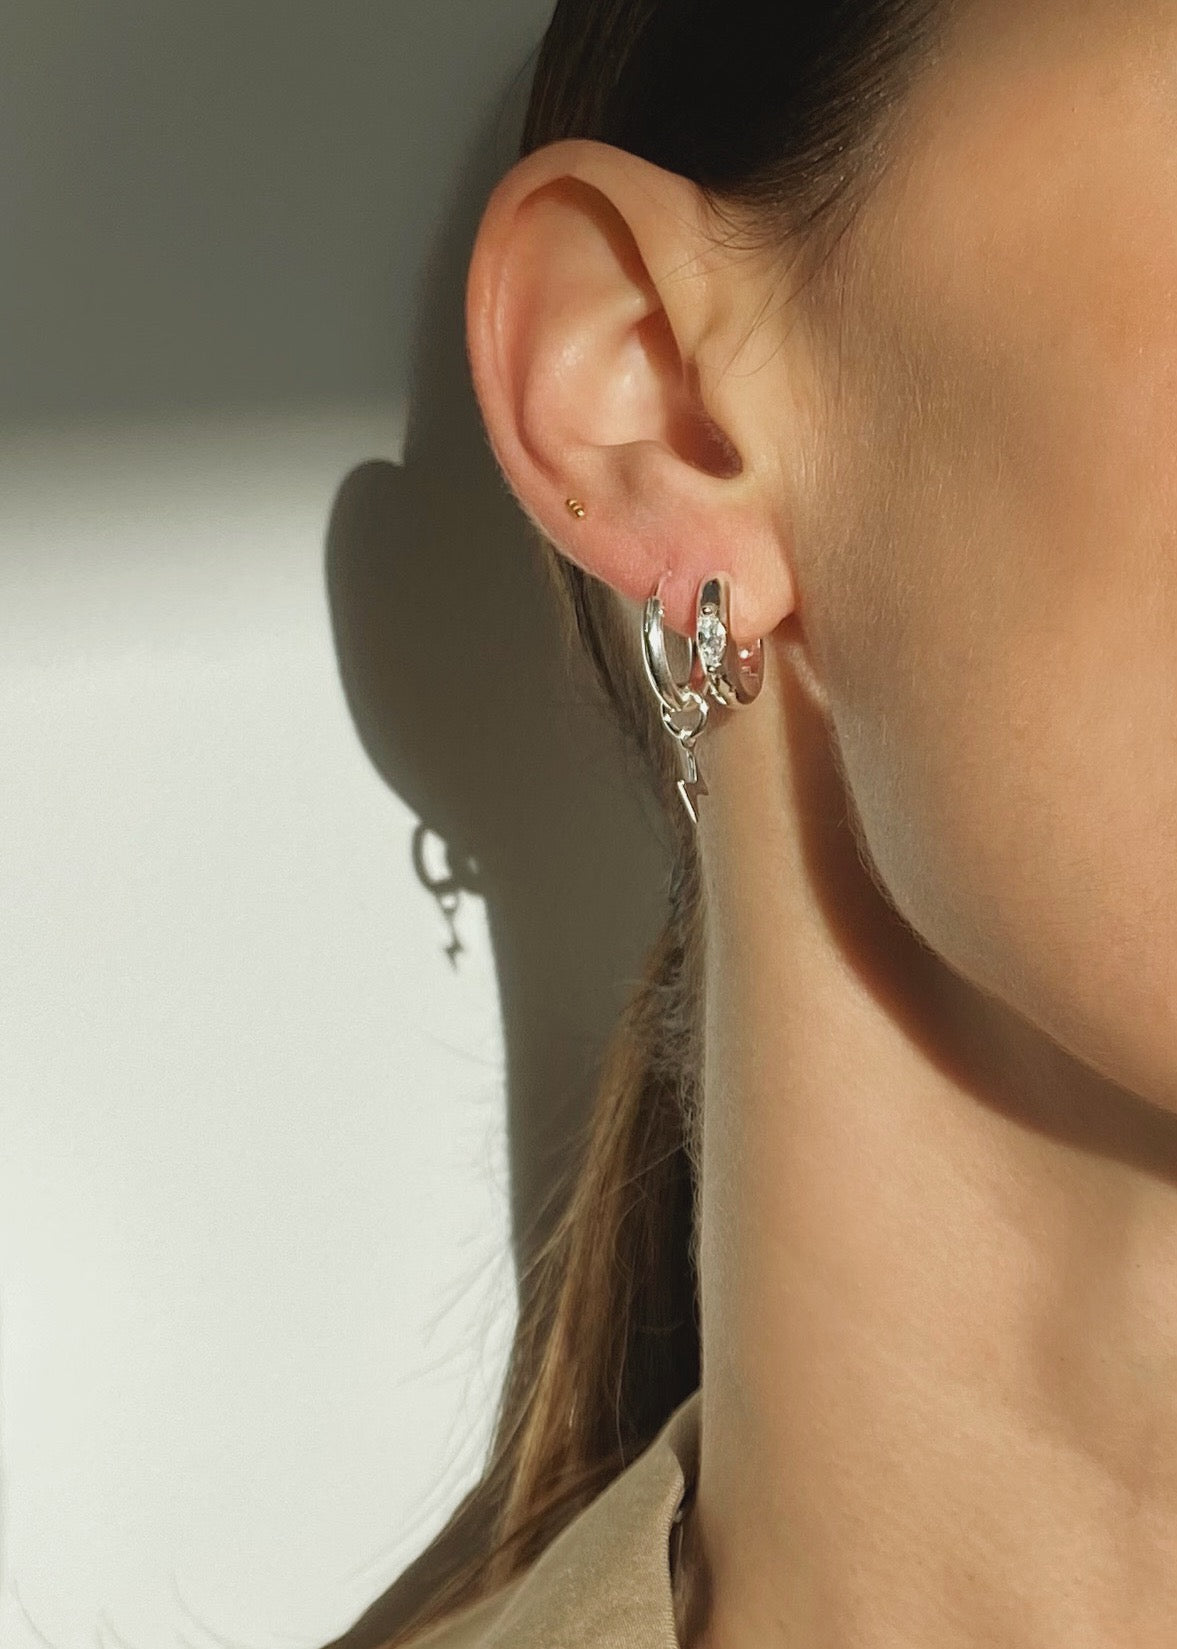 Crystal hoops earrings silver